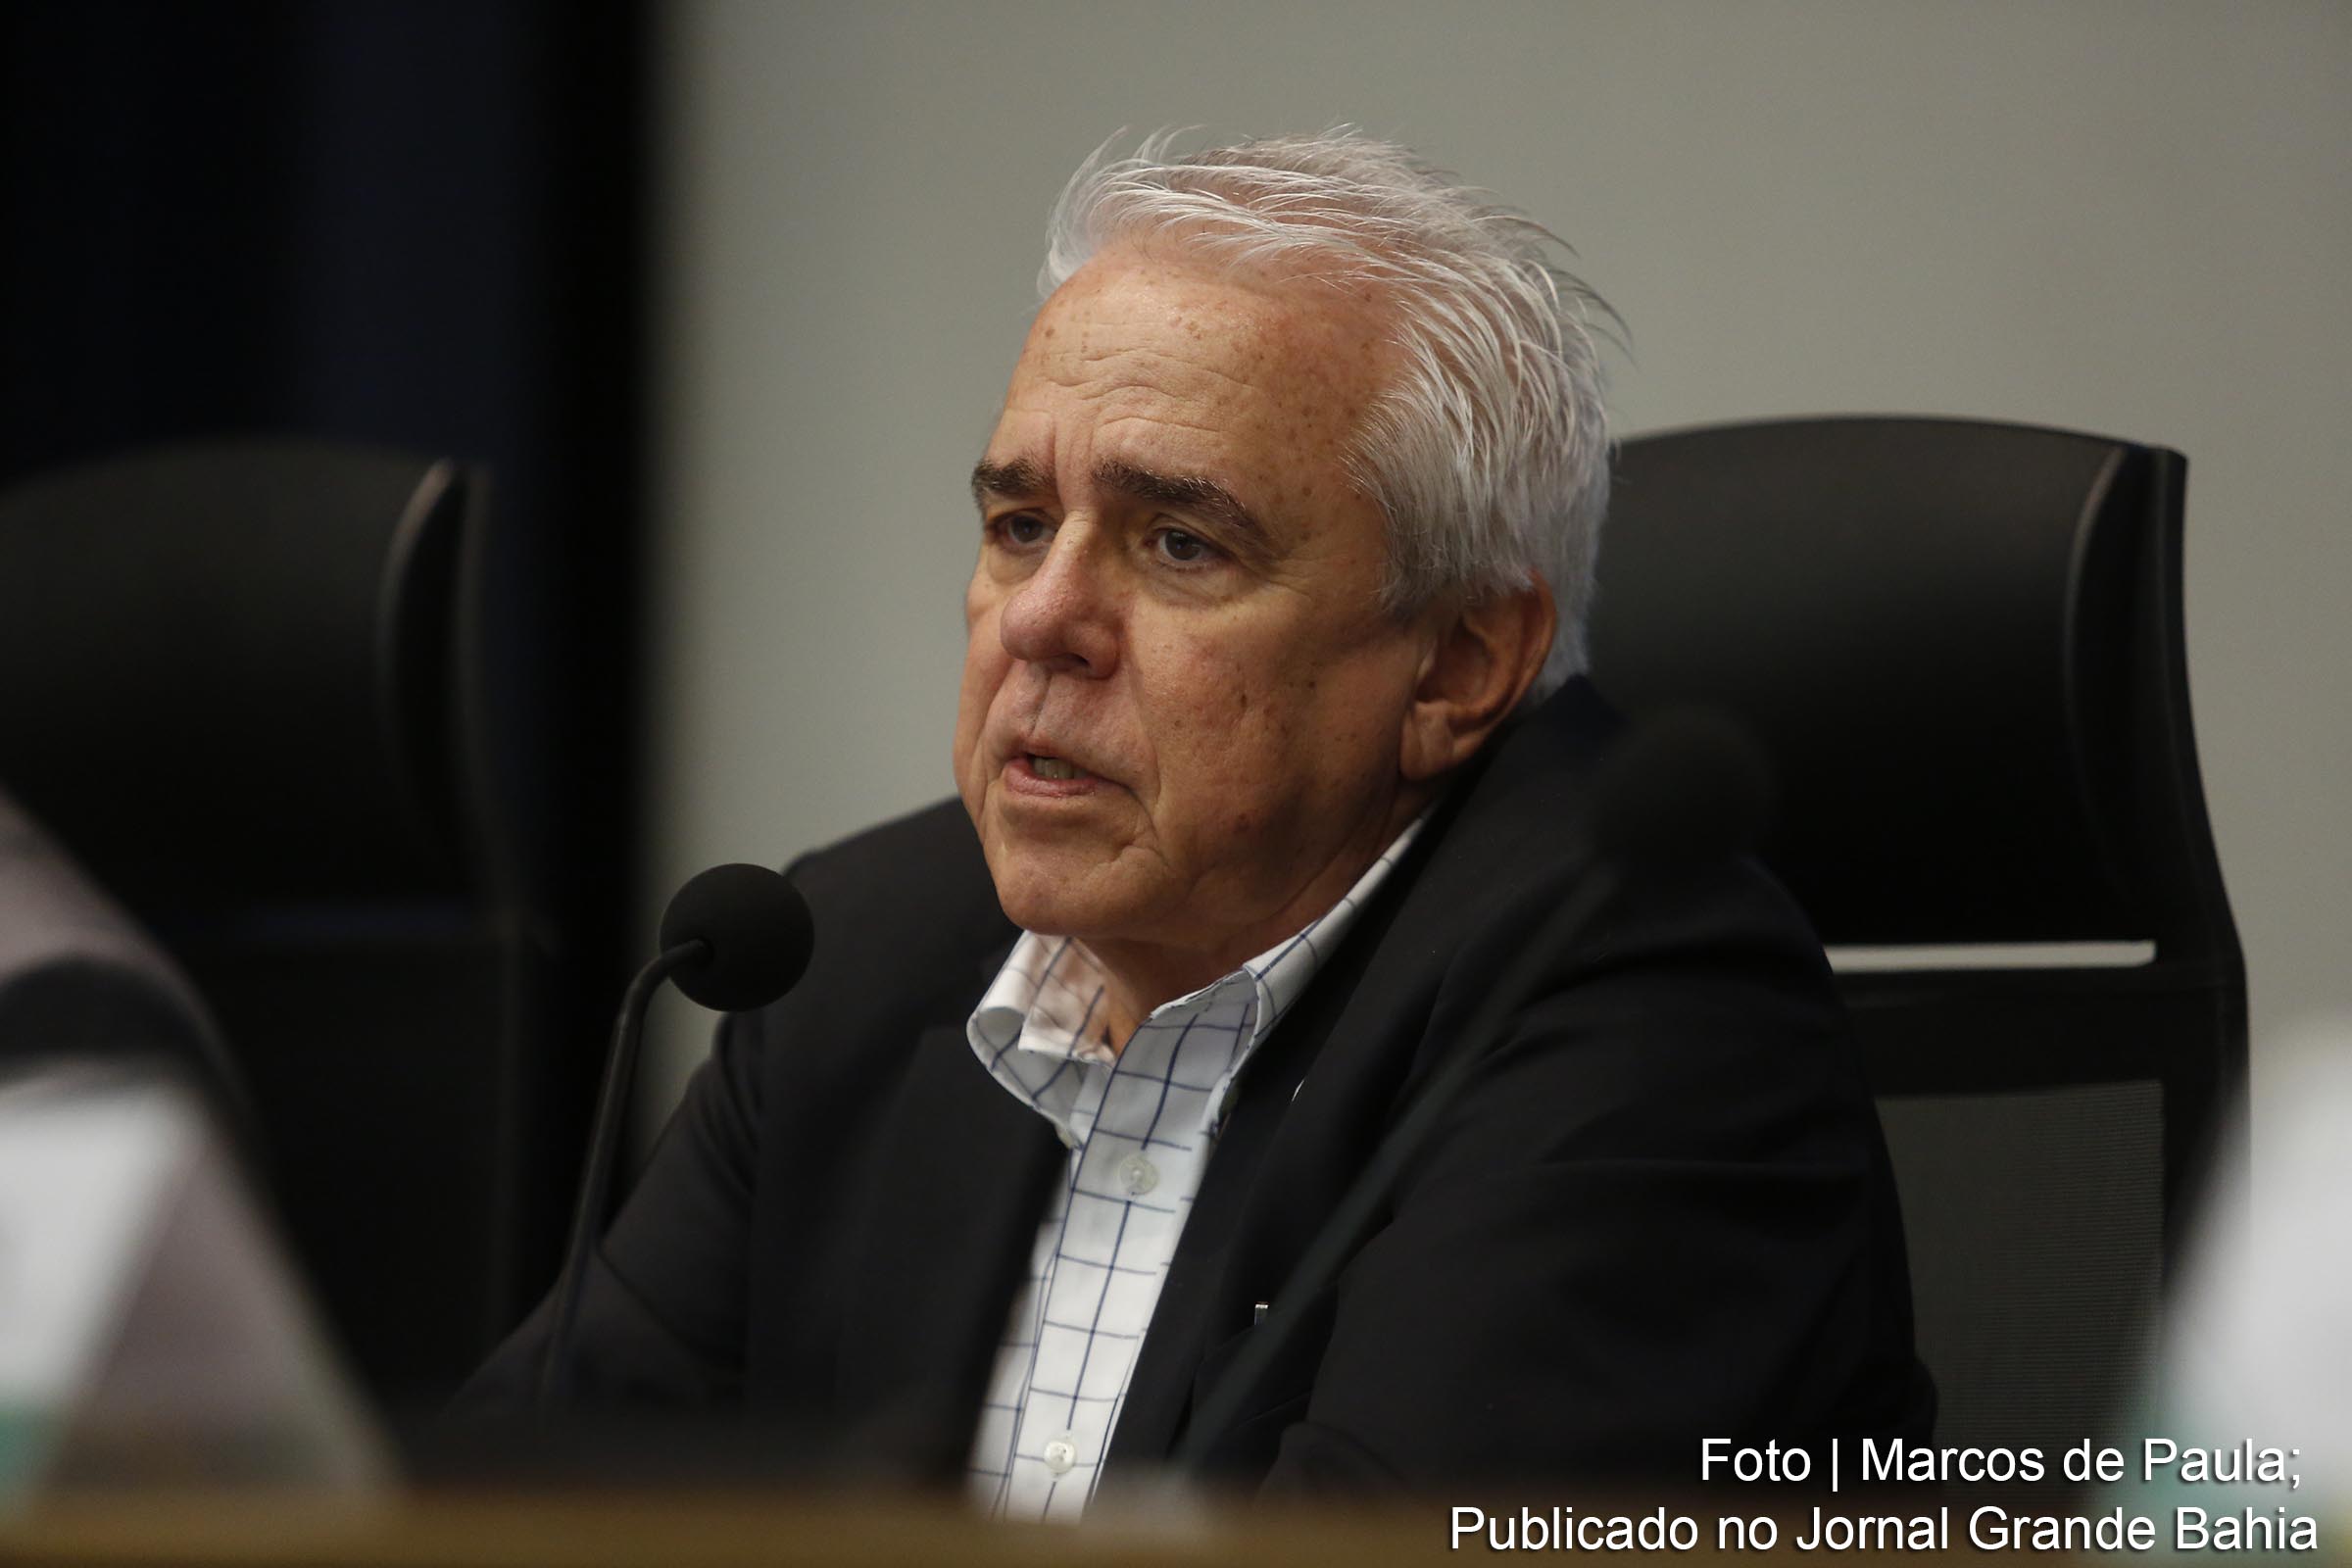 Roberto Castello Branco, presidente da Petrobras, defende política neoliberal do Governo Bolsonaro, de dolarização dos preços dos combustíveis.